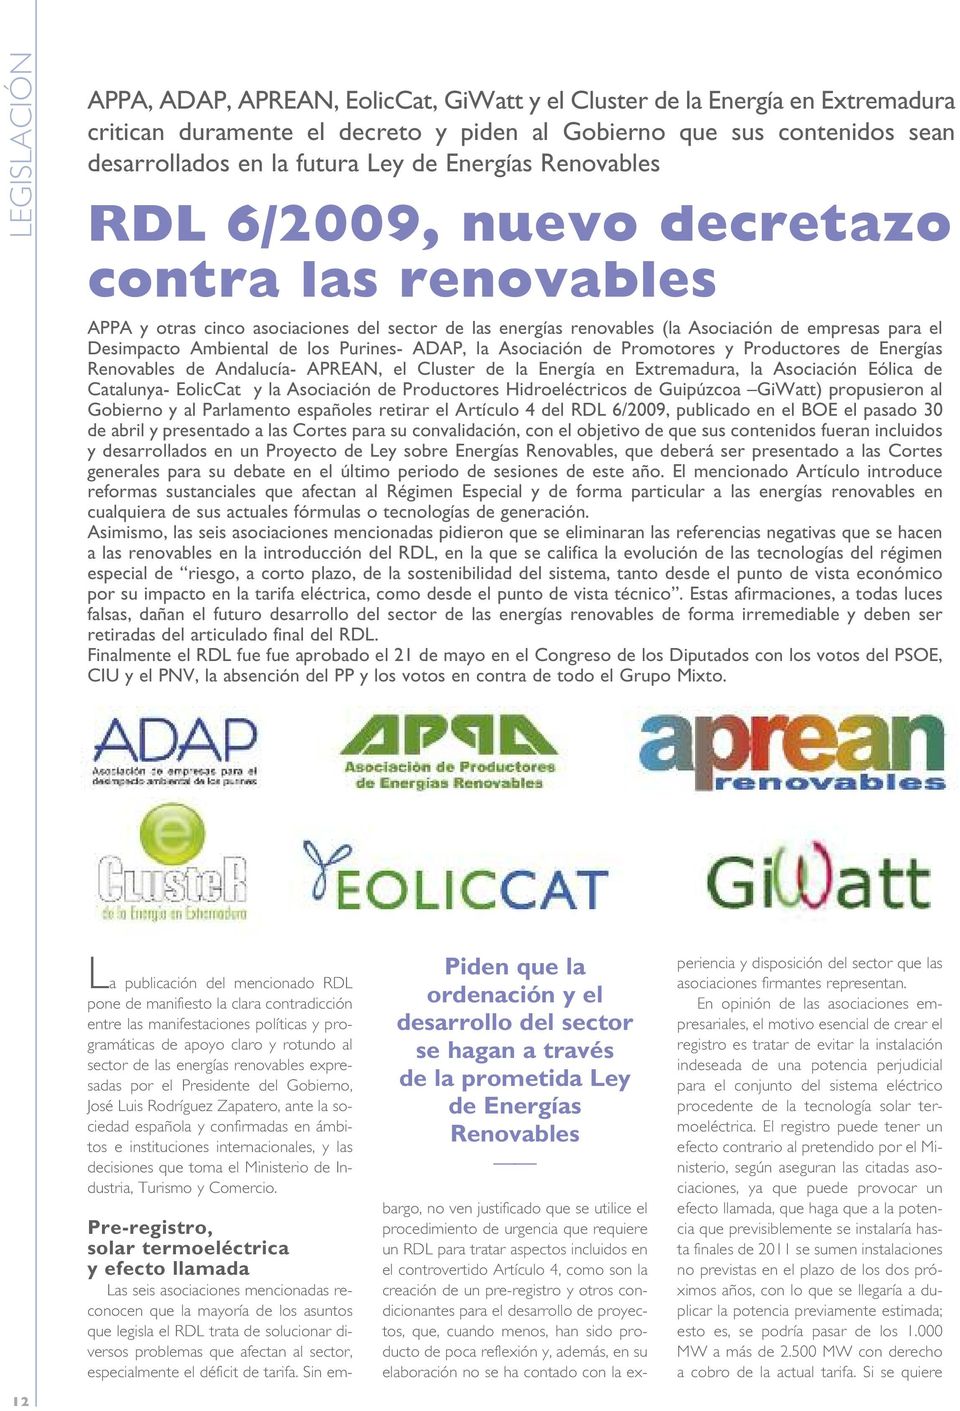 los Purines- ADAP, la Asociación de Promotores y Productores de Energías Renovables de Andalucía- APREAN, el Cluster de la Energía en Extremadura, la Asociación Eólica de Catalunya- EolicCat y la